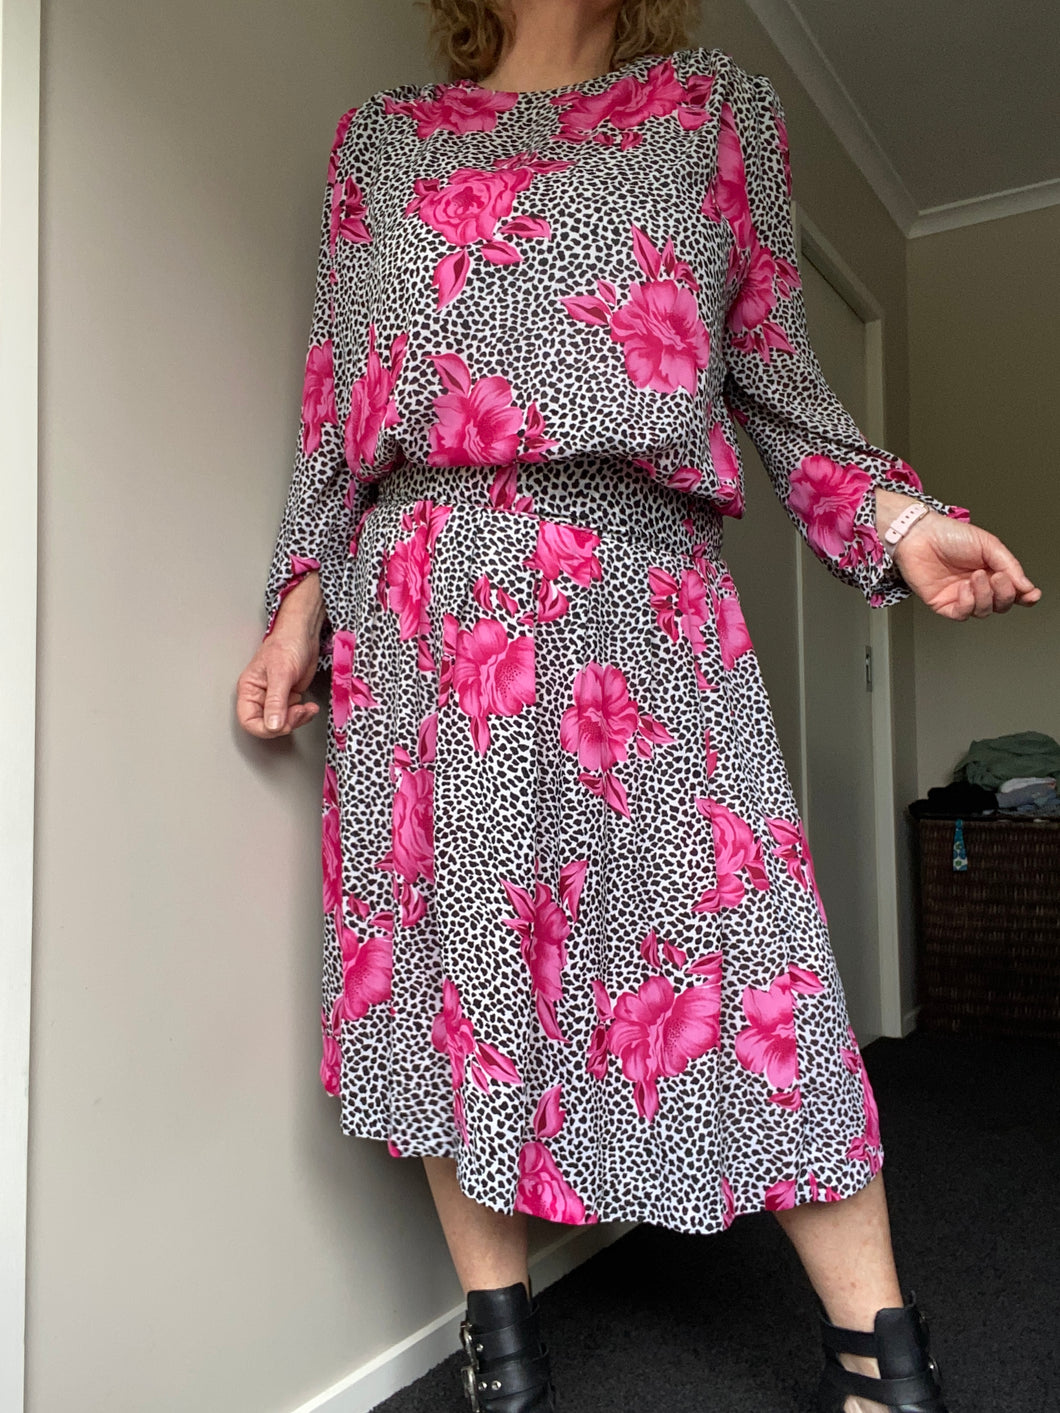 Paulls Pink Flower Dress size 12